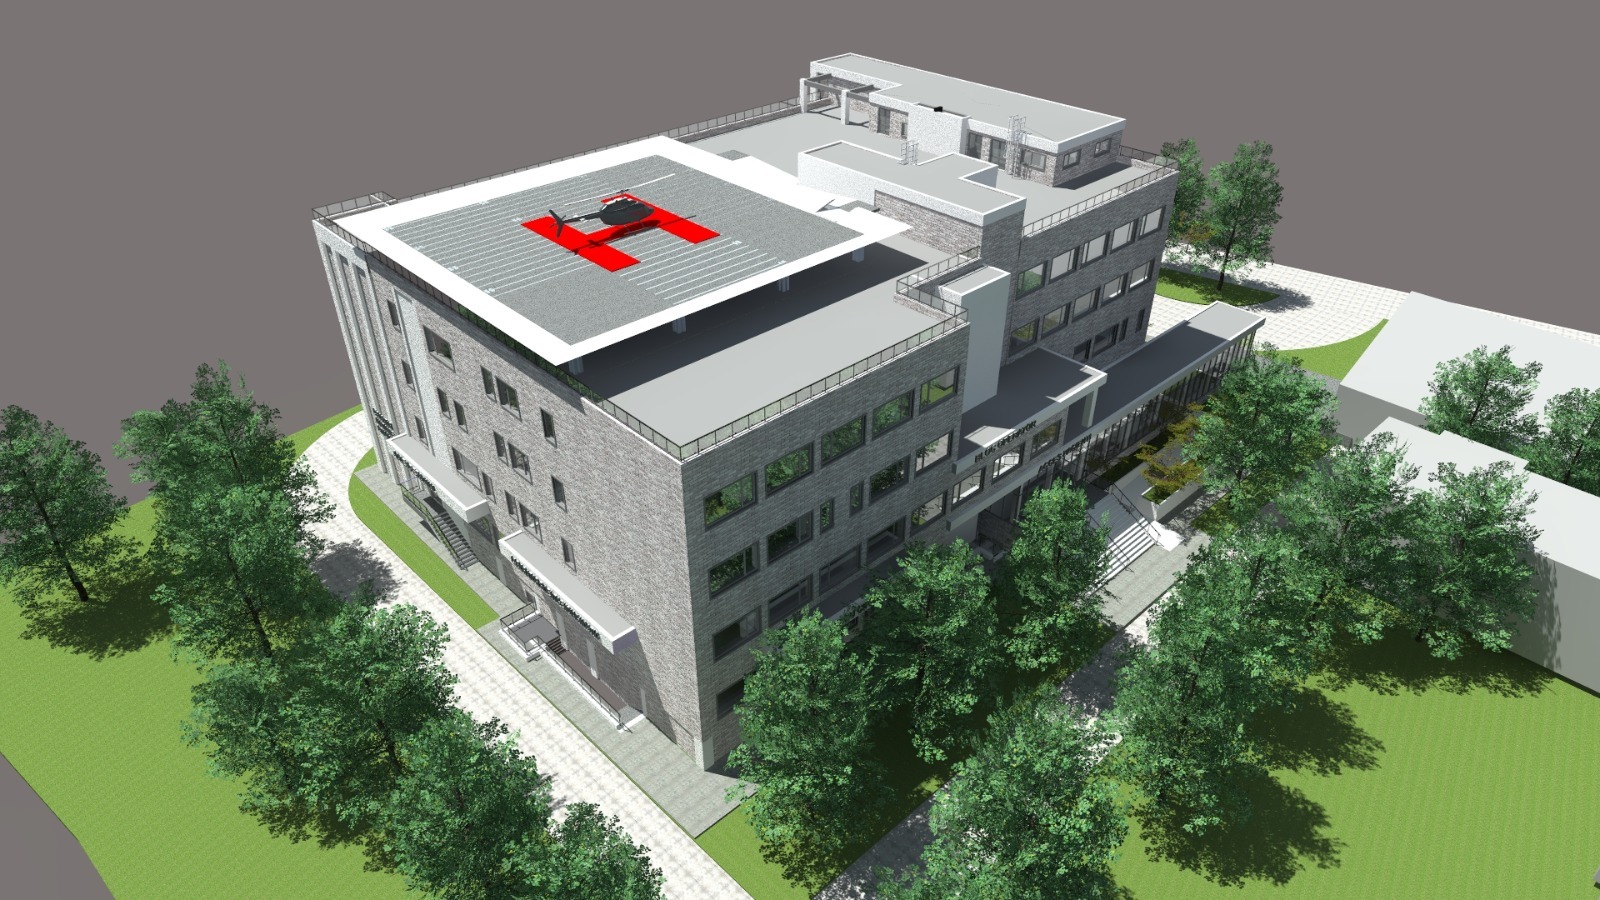 A fost semnat contractul de proiectare şi realizare a lucrărilor pentru noul spital de la Tecuci